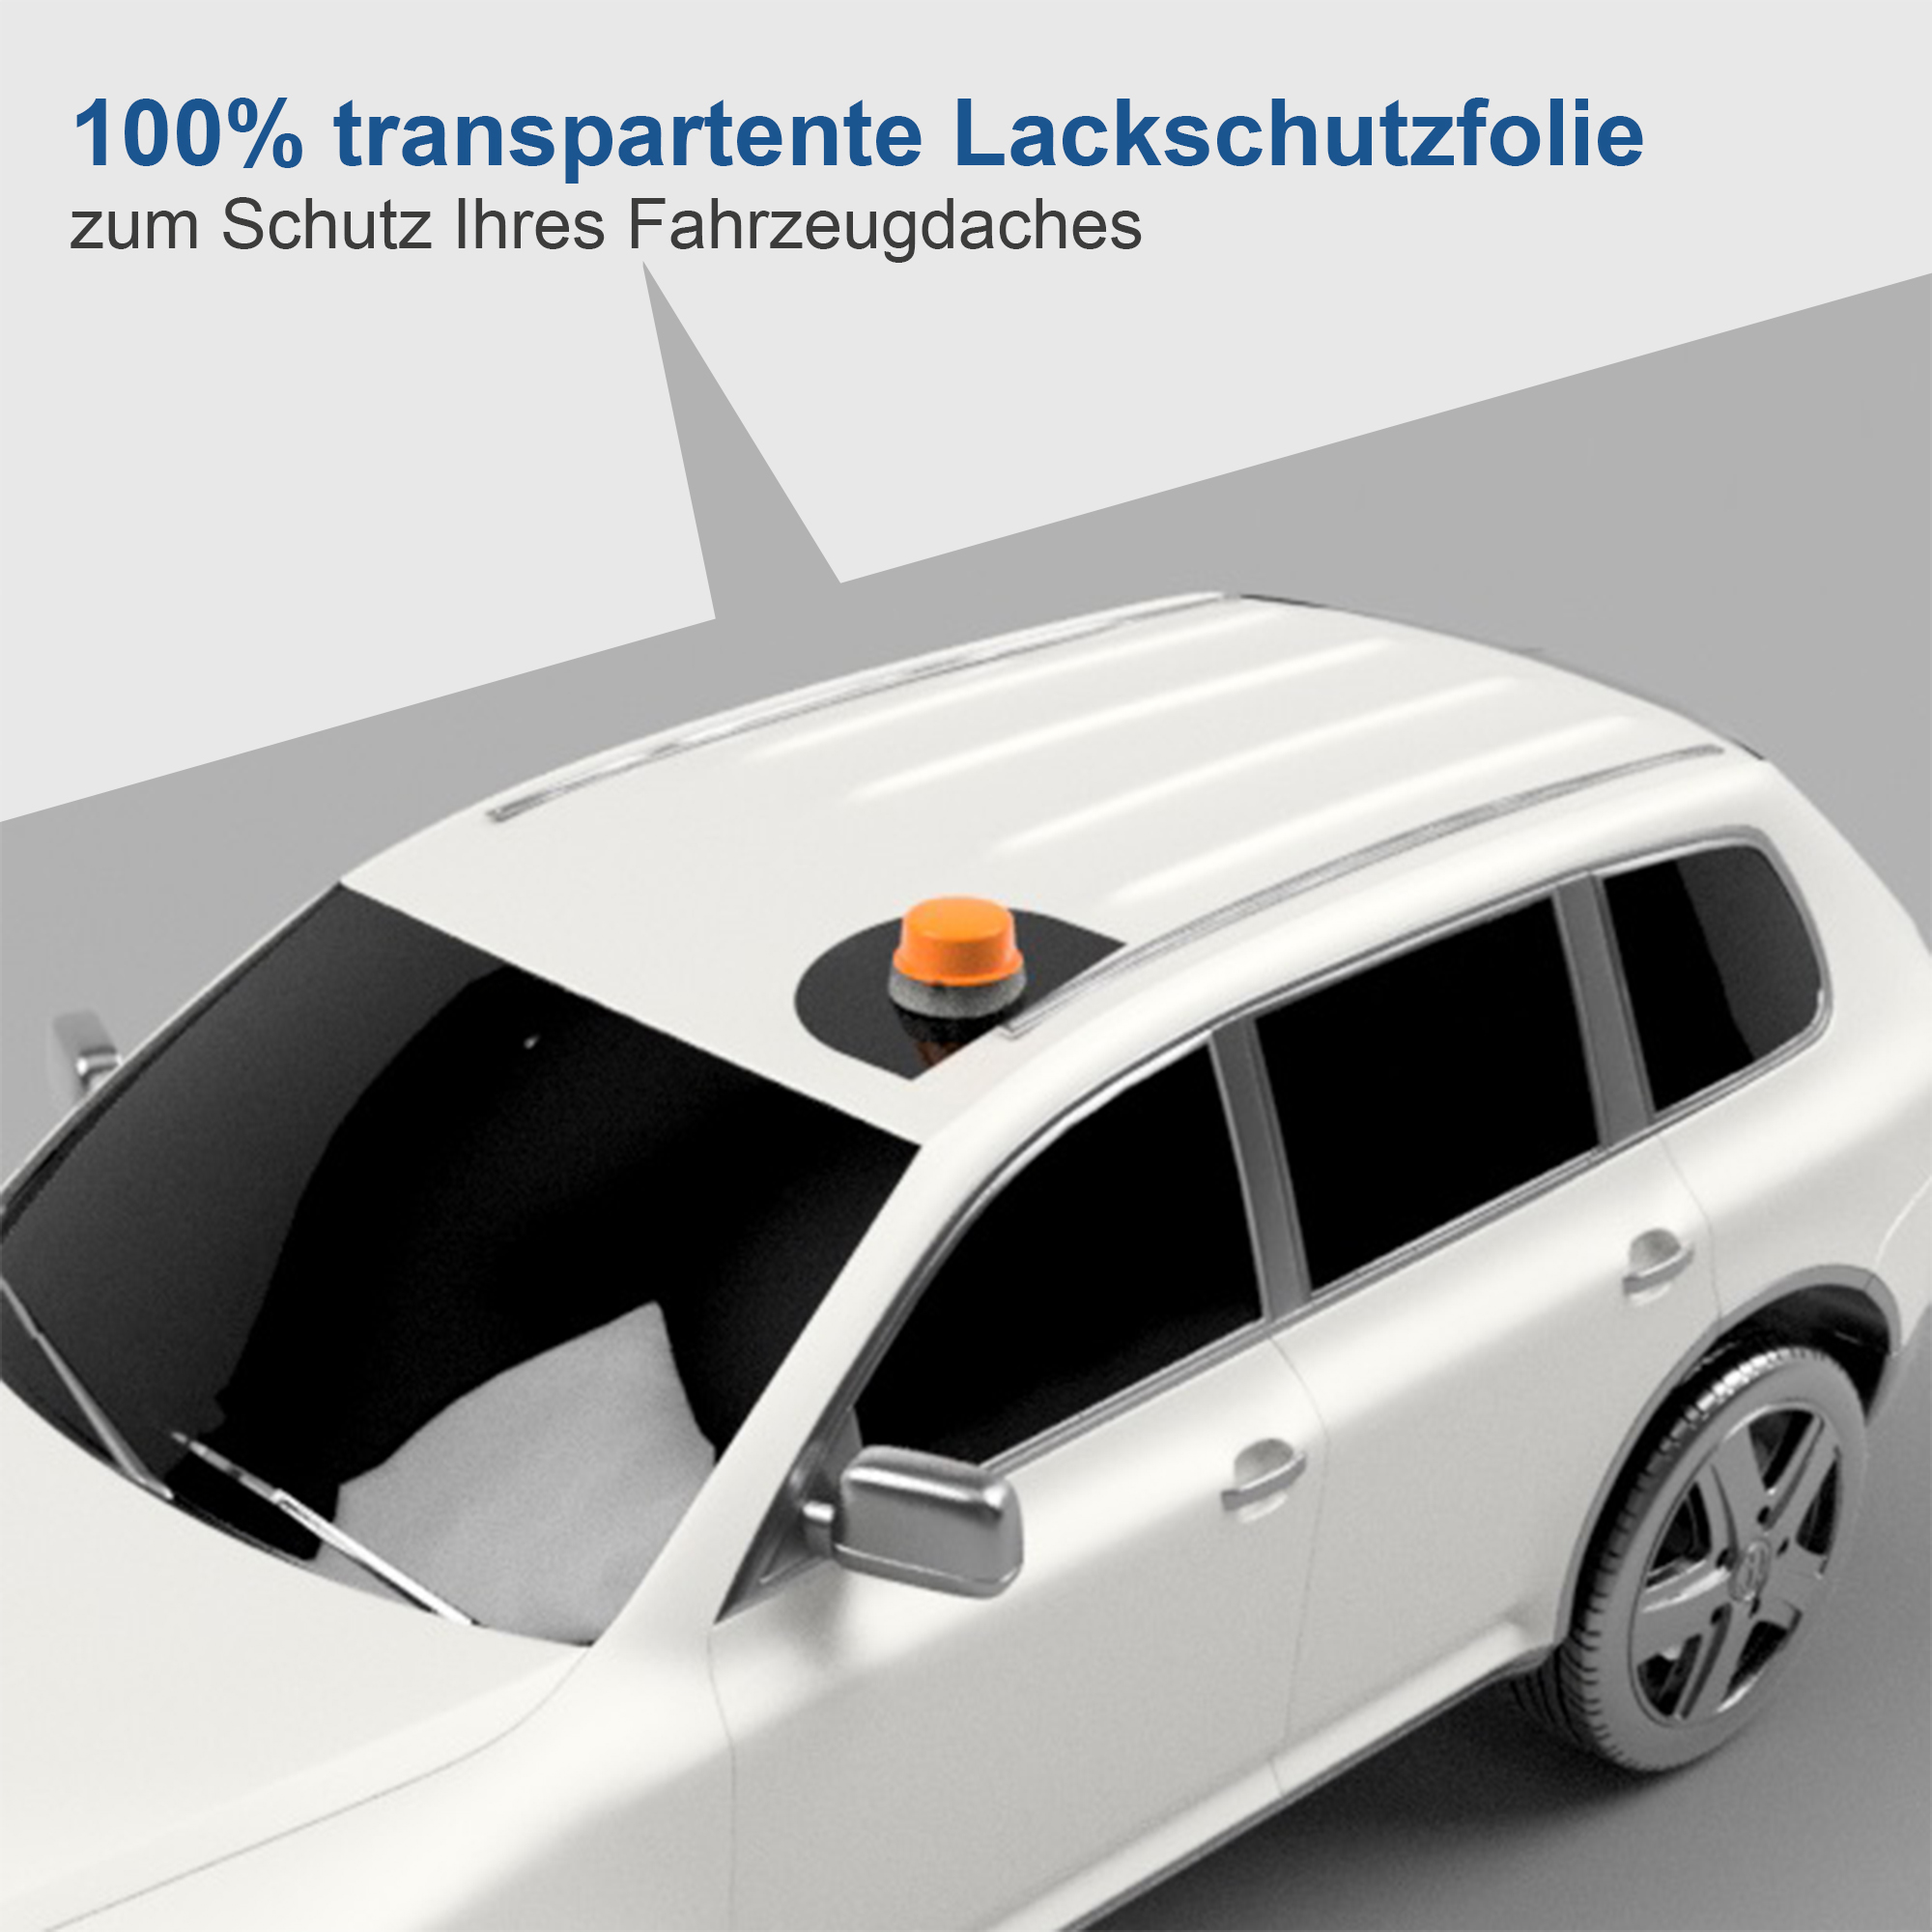 Lackschutzfolien Anwendungspaket für das Fahrzeugdach